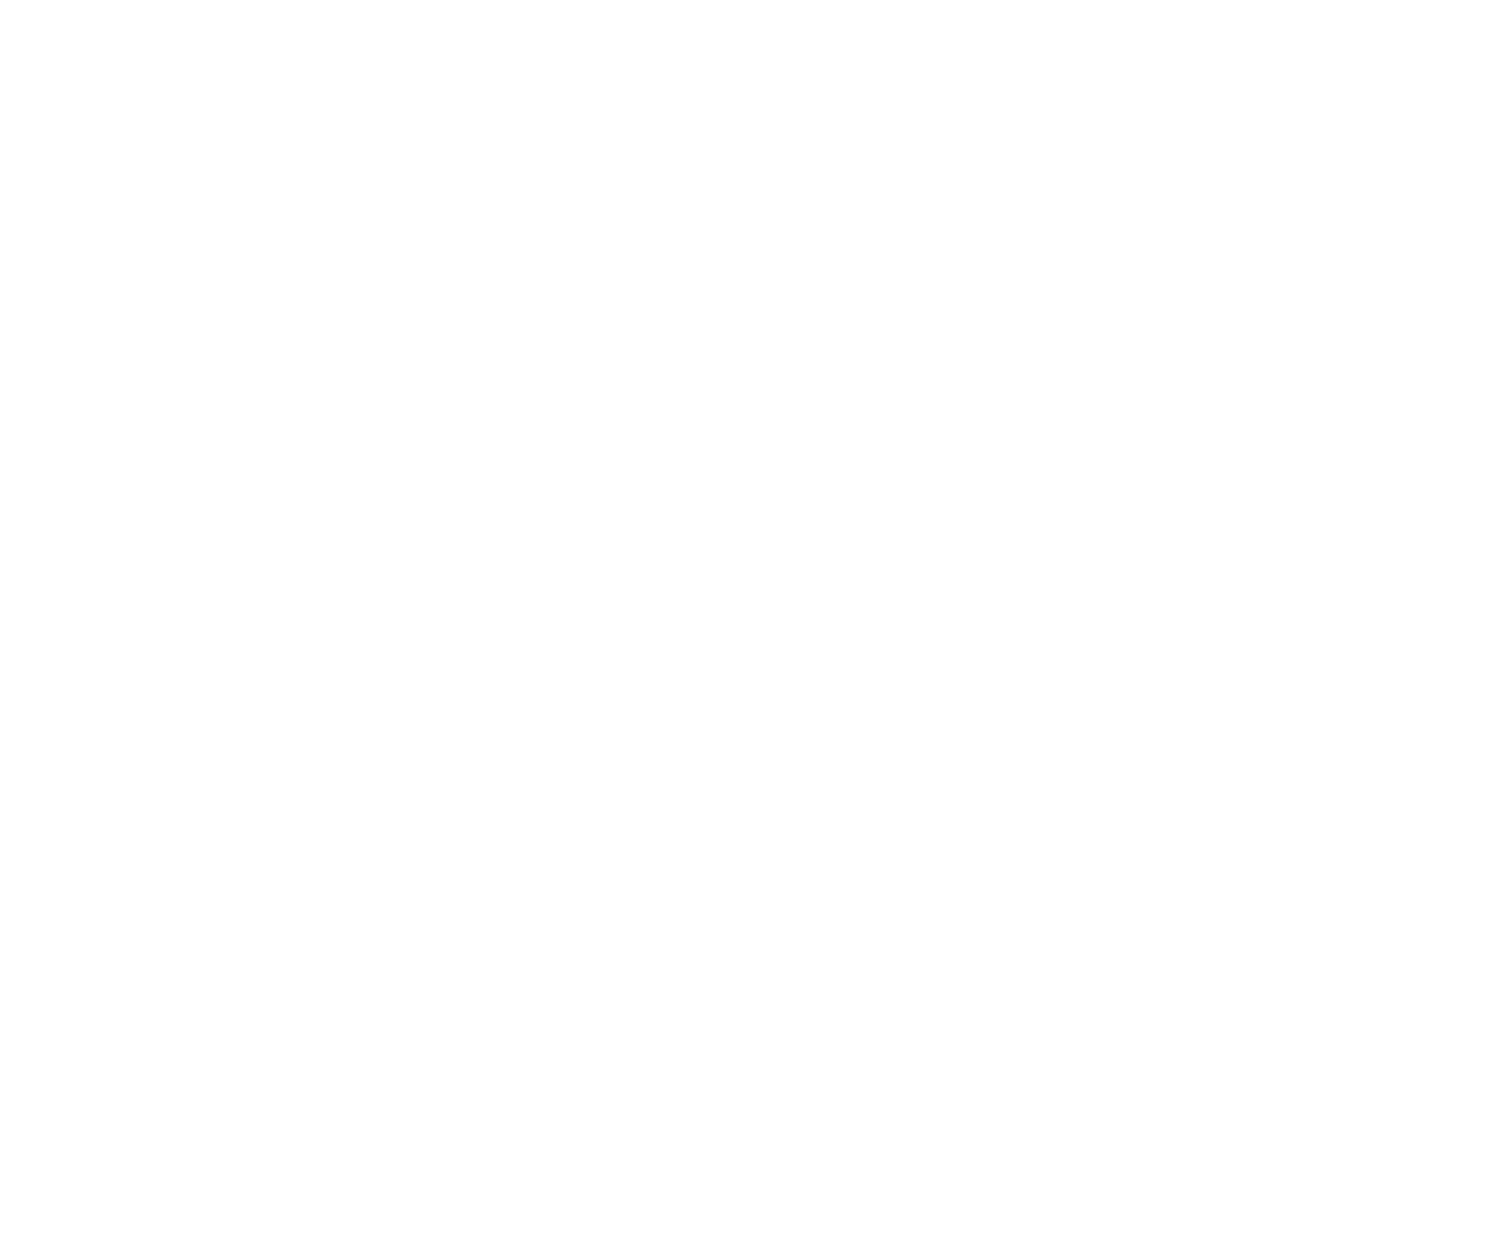 Katie beauty